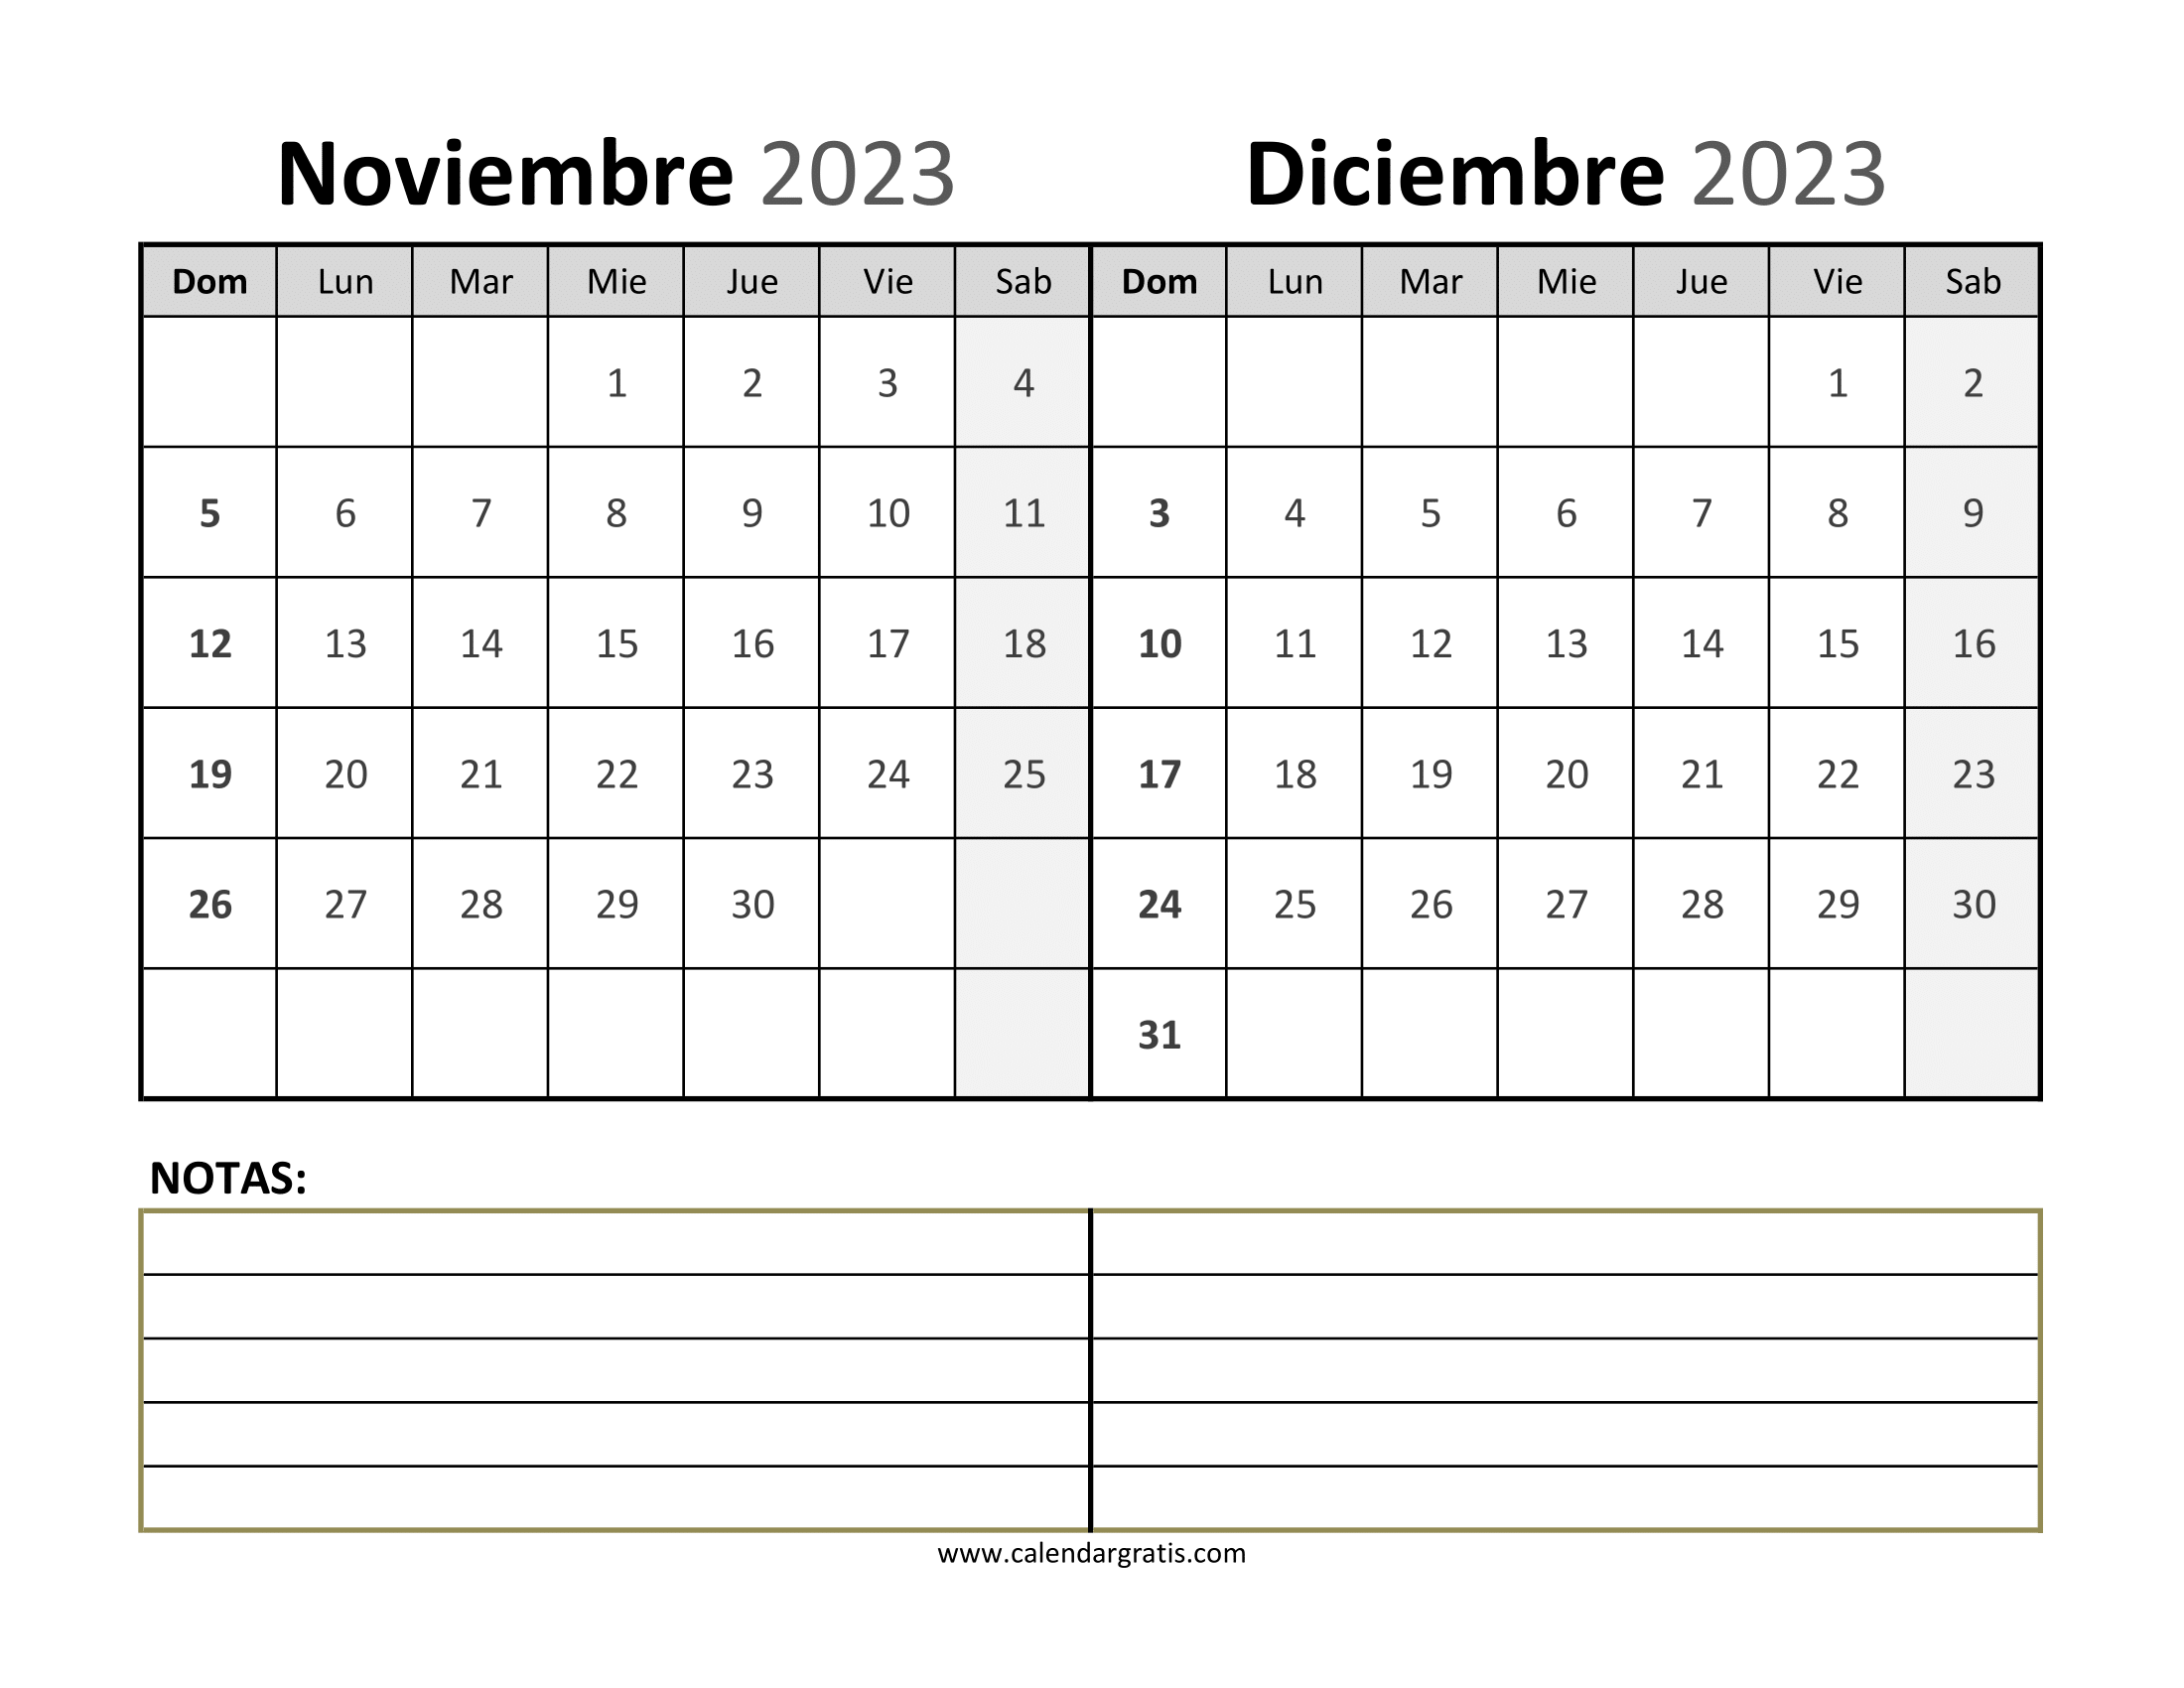 Calendario-noviembre-diciembre-2023